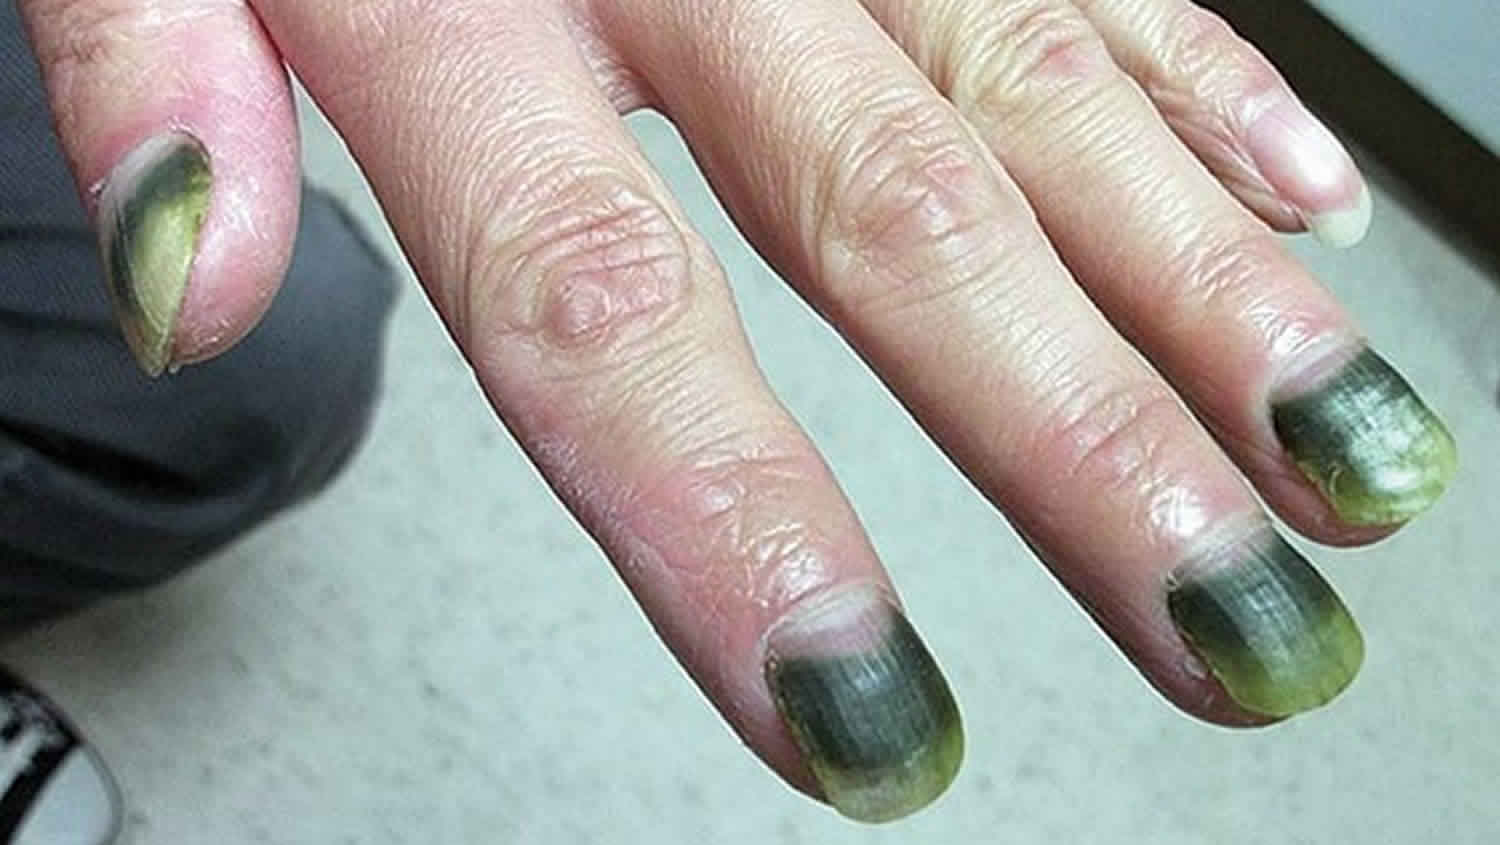 green nail syndrome